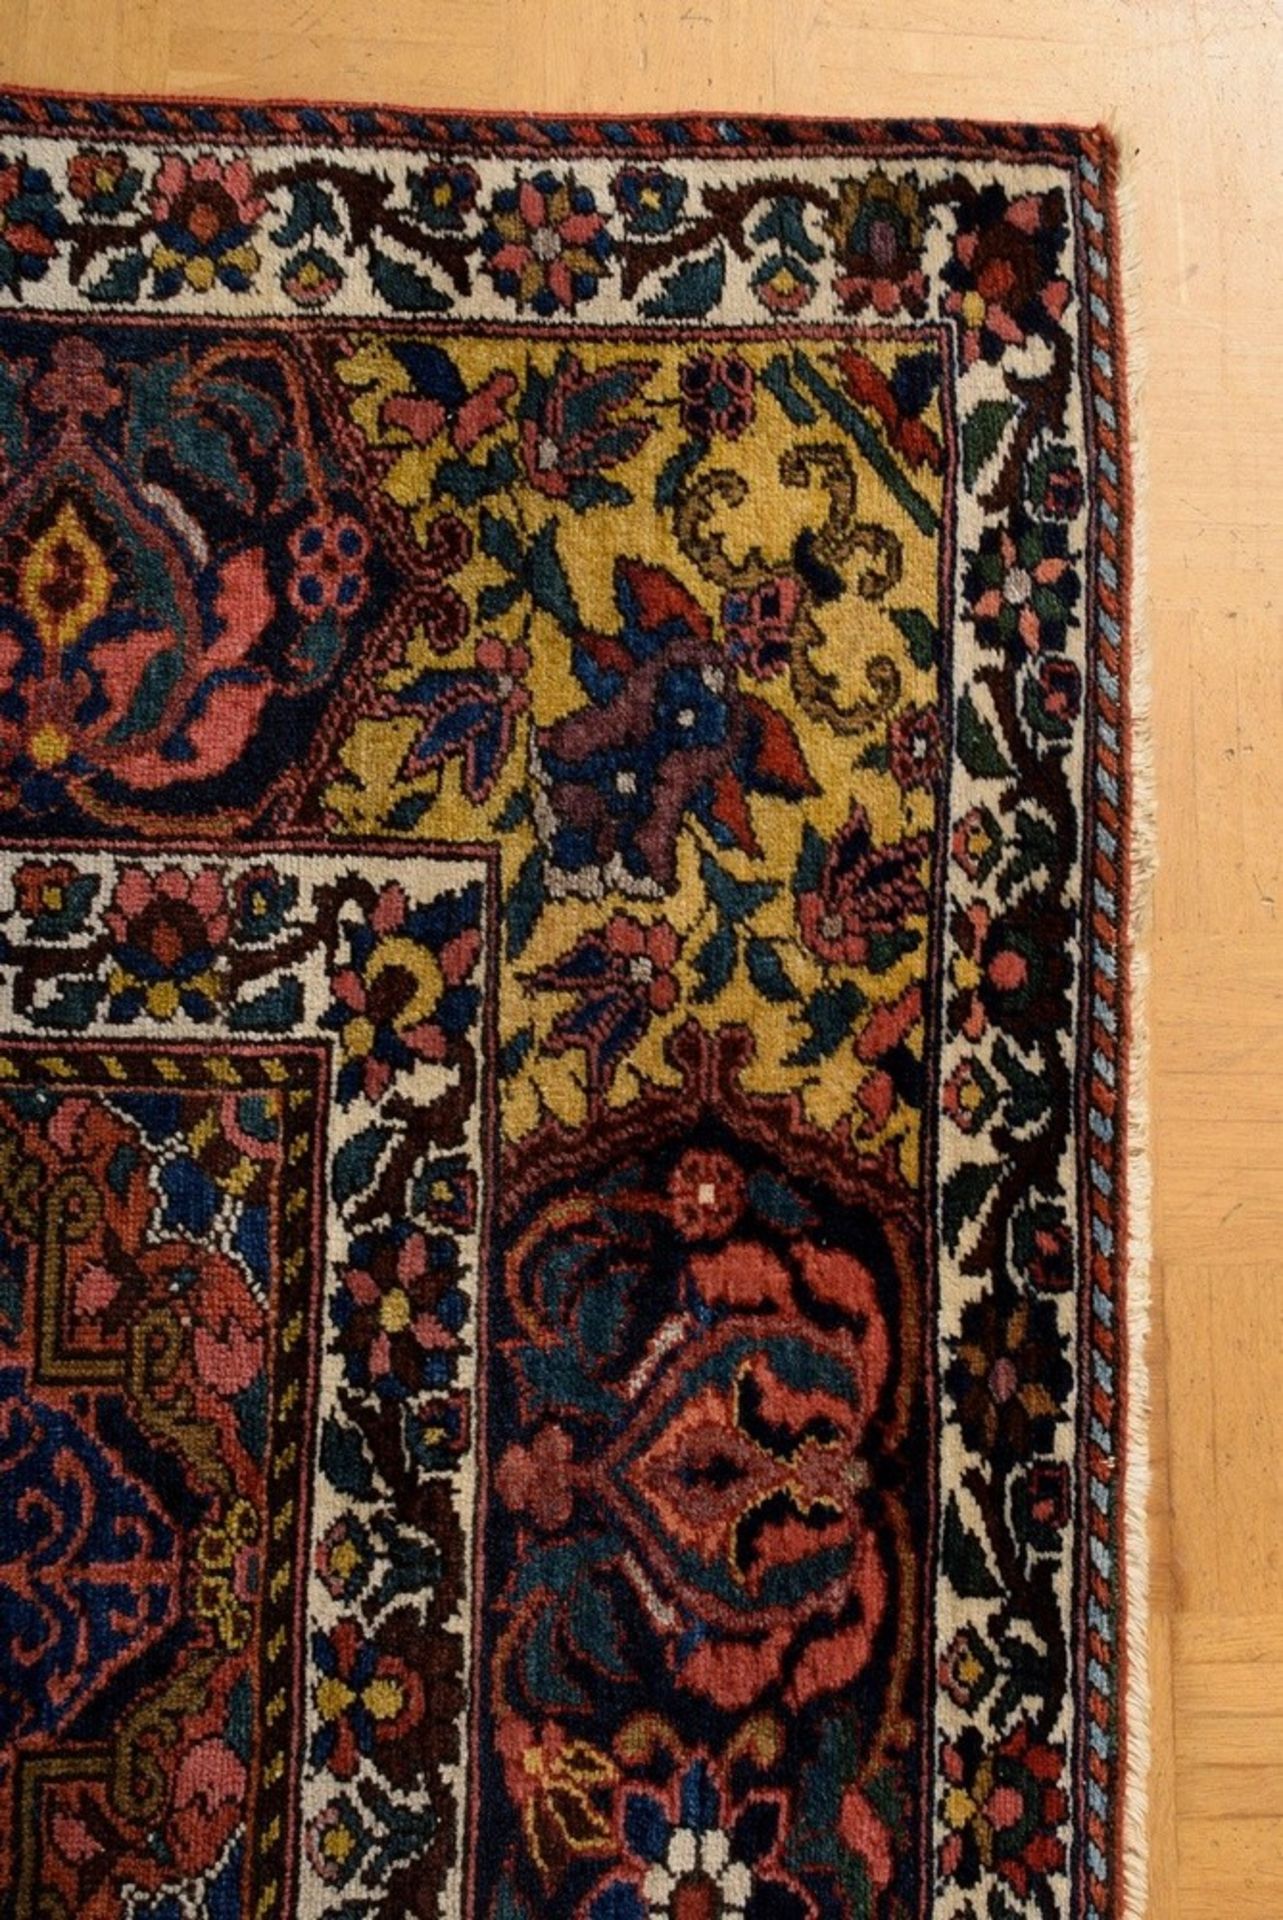 Großer Bachtiari Teppich mit floralem Rapportmuster aus Feldern in unterschiedlichen Grundfarben, d - Bild 5 aus 7